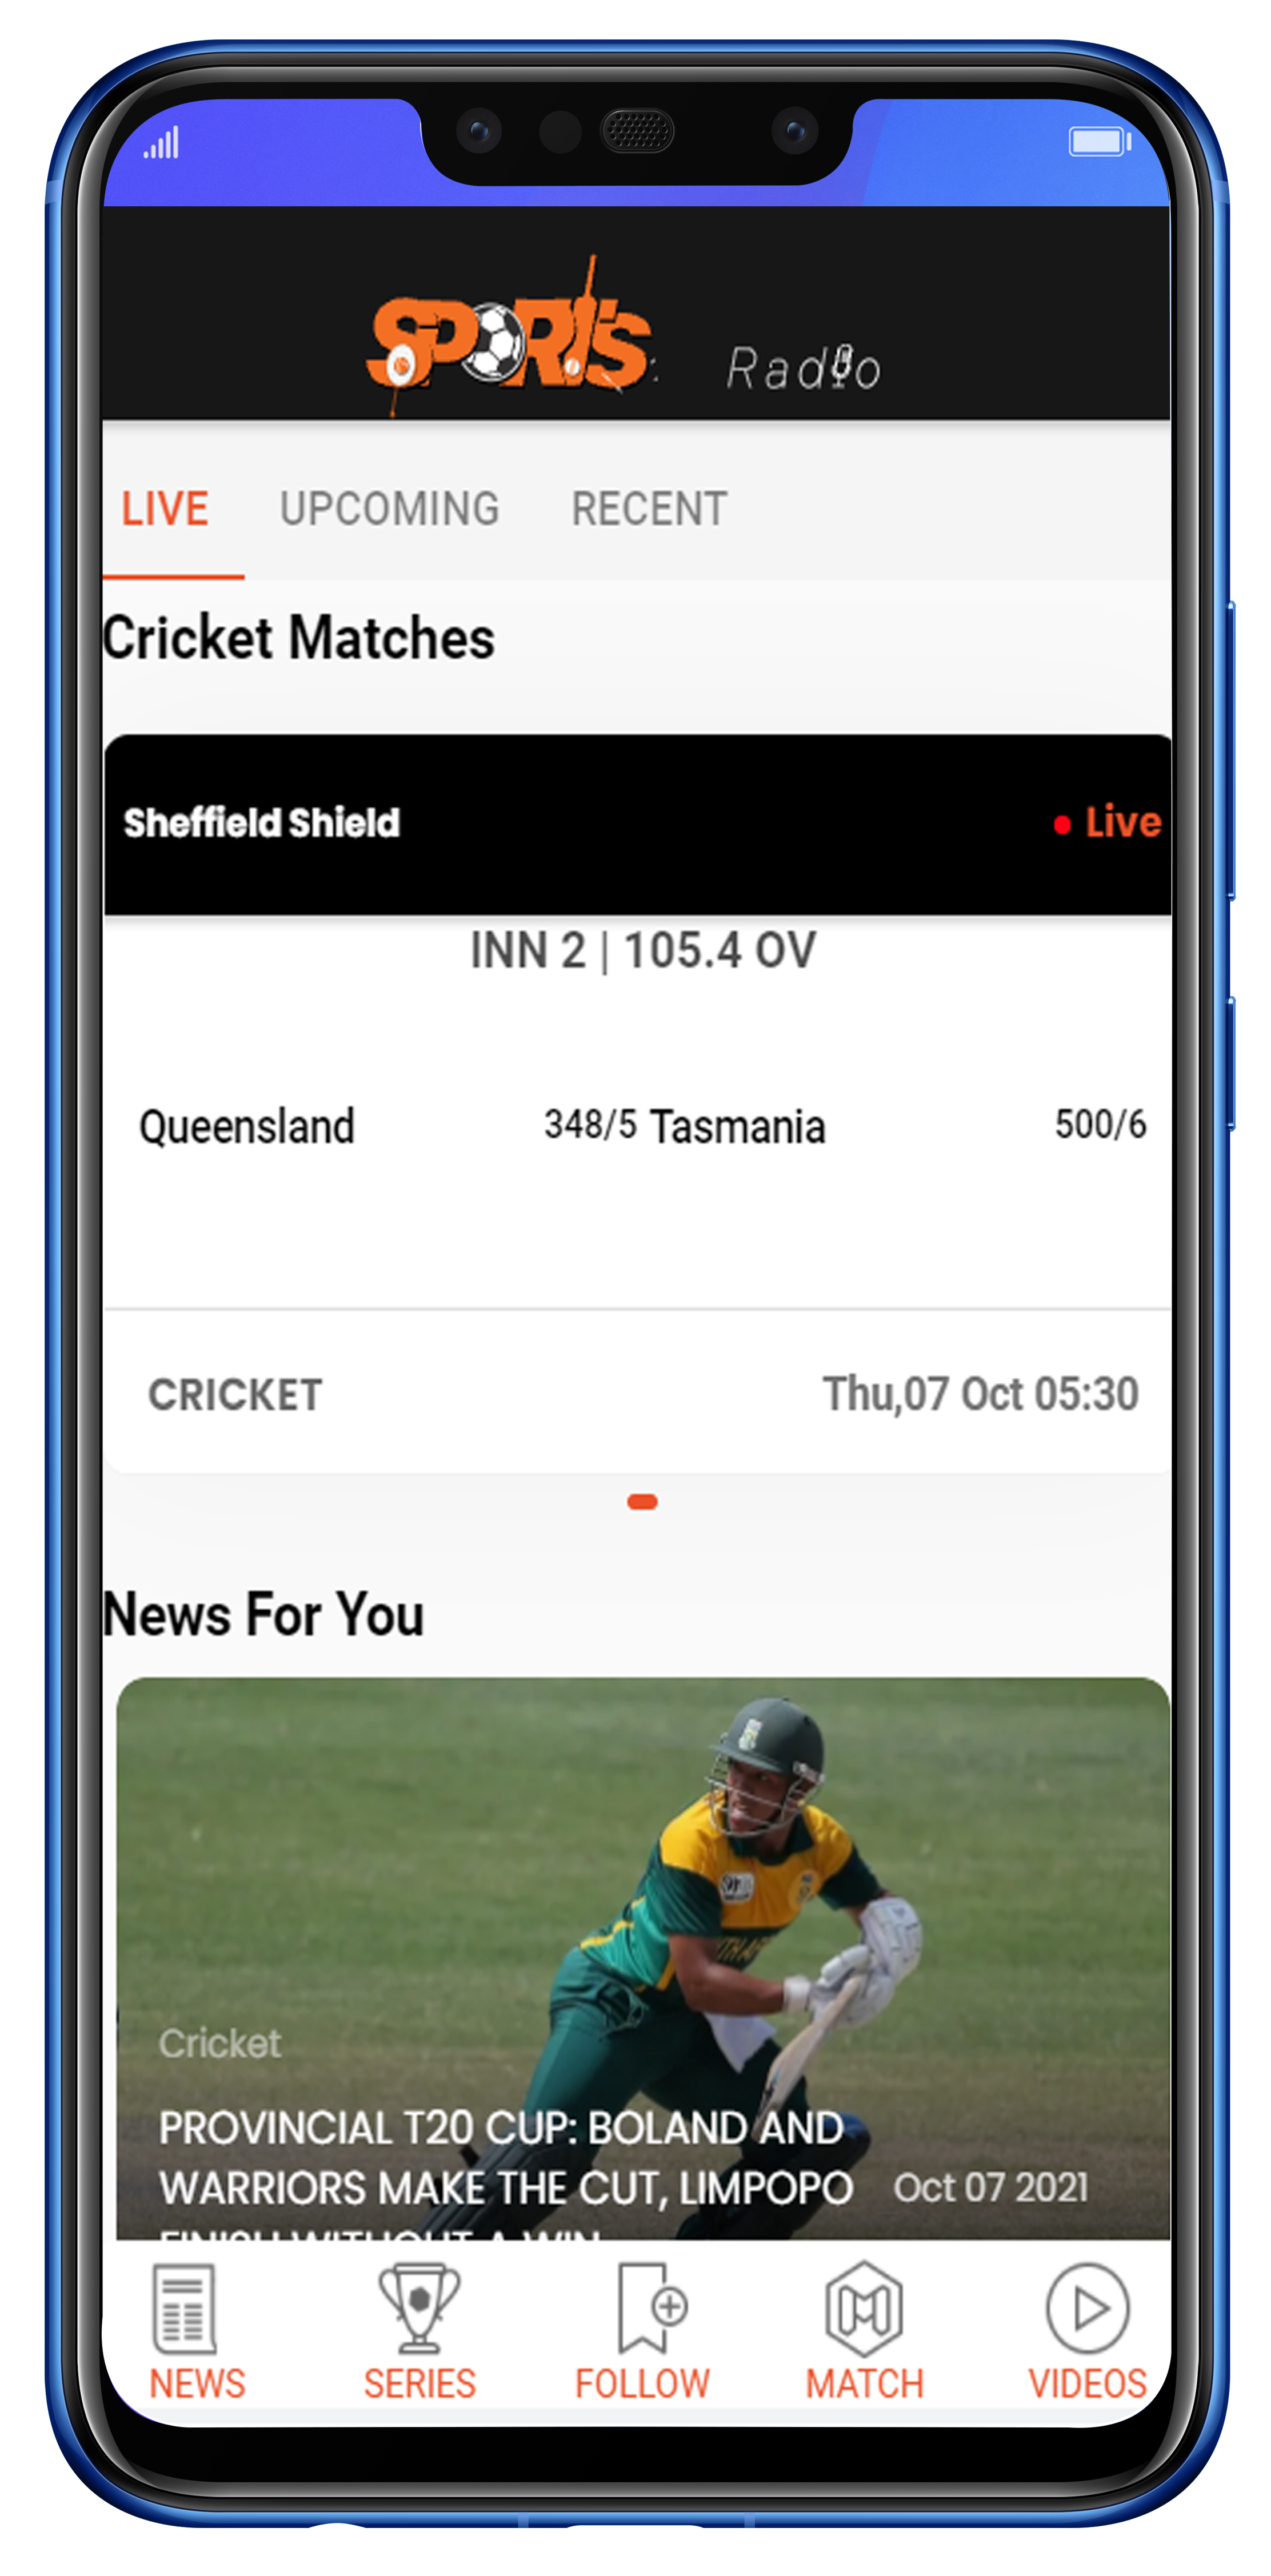 Radio Live Cricket Live News